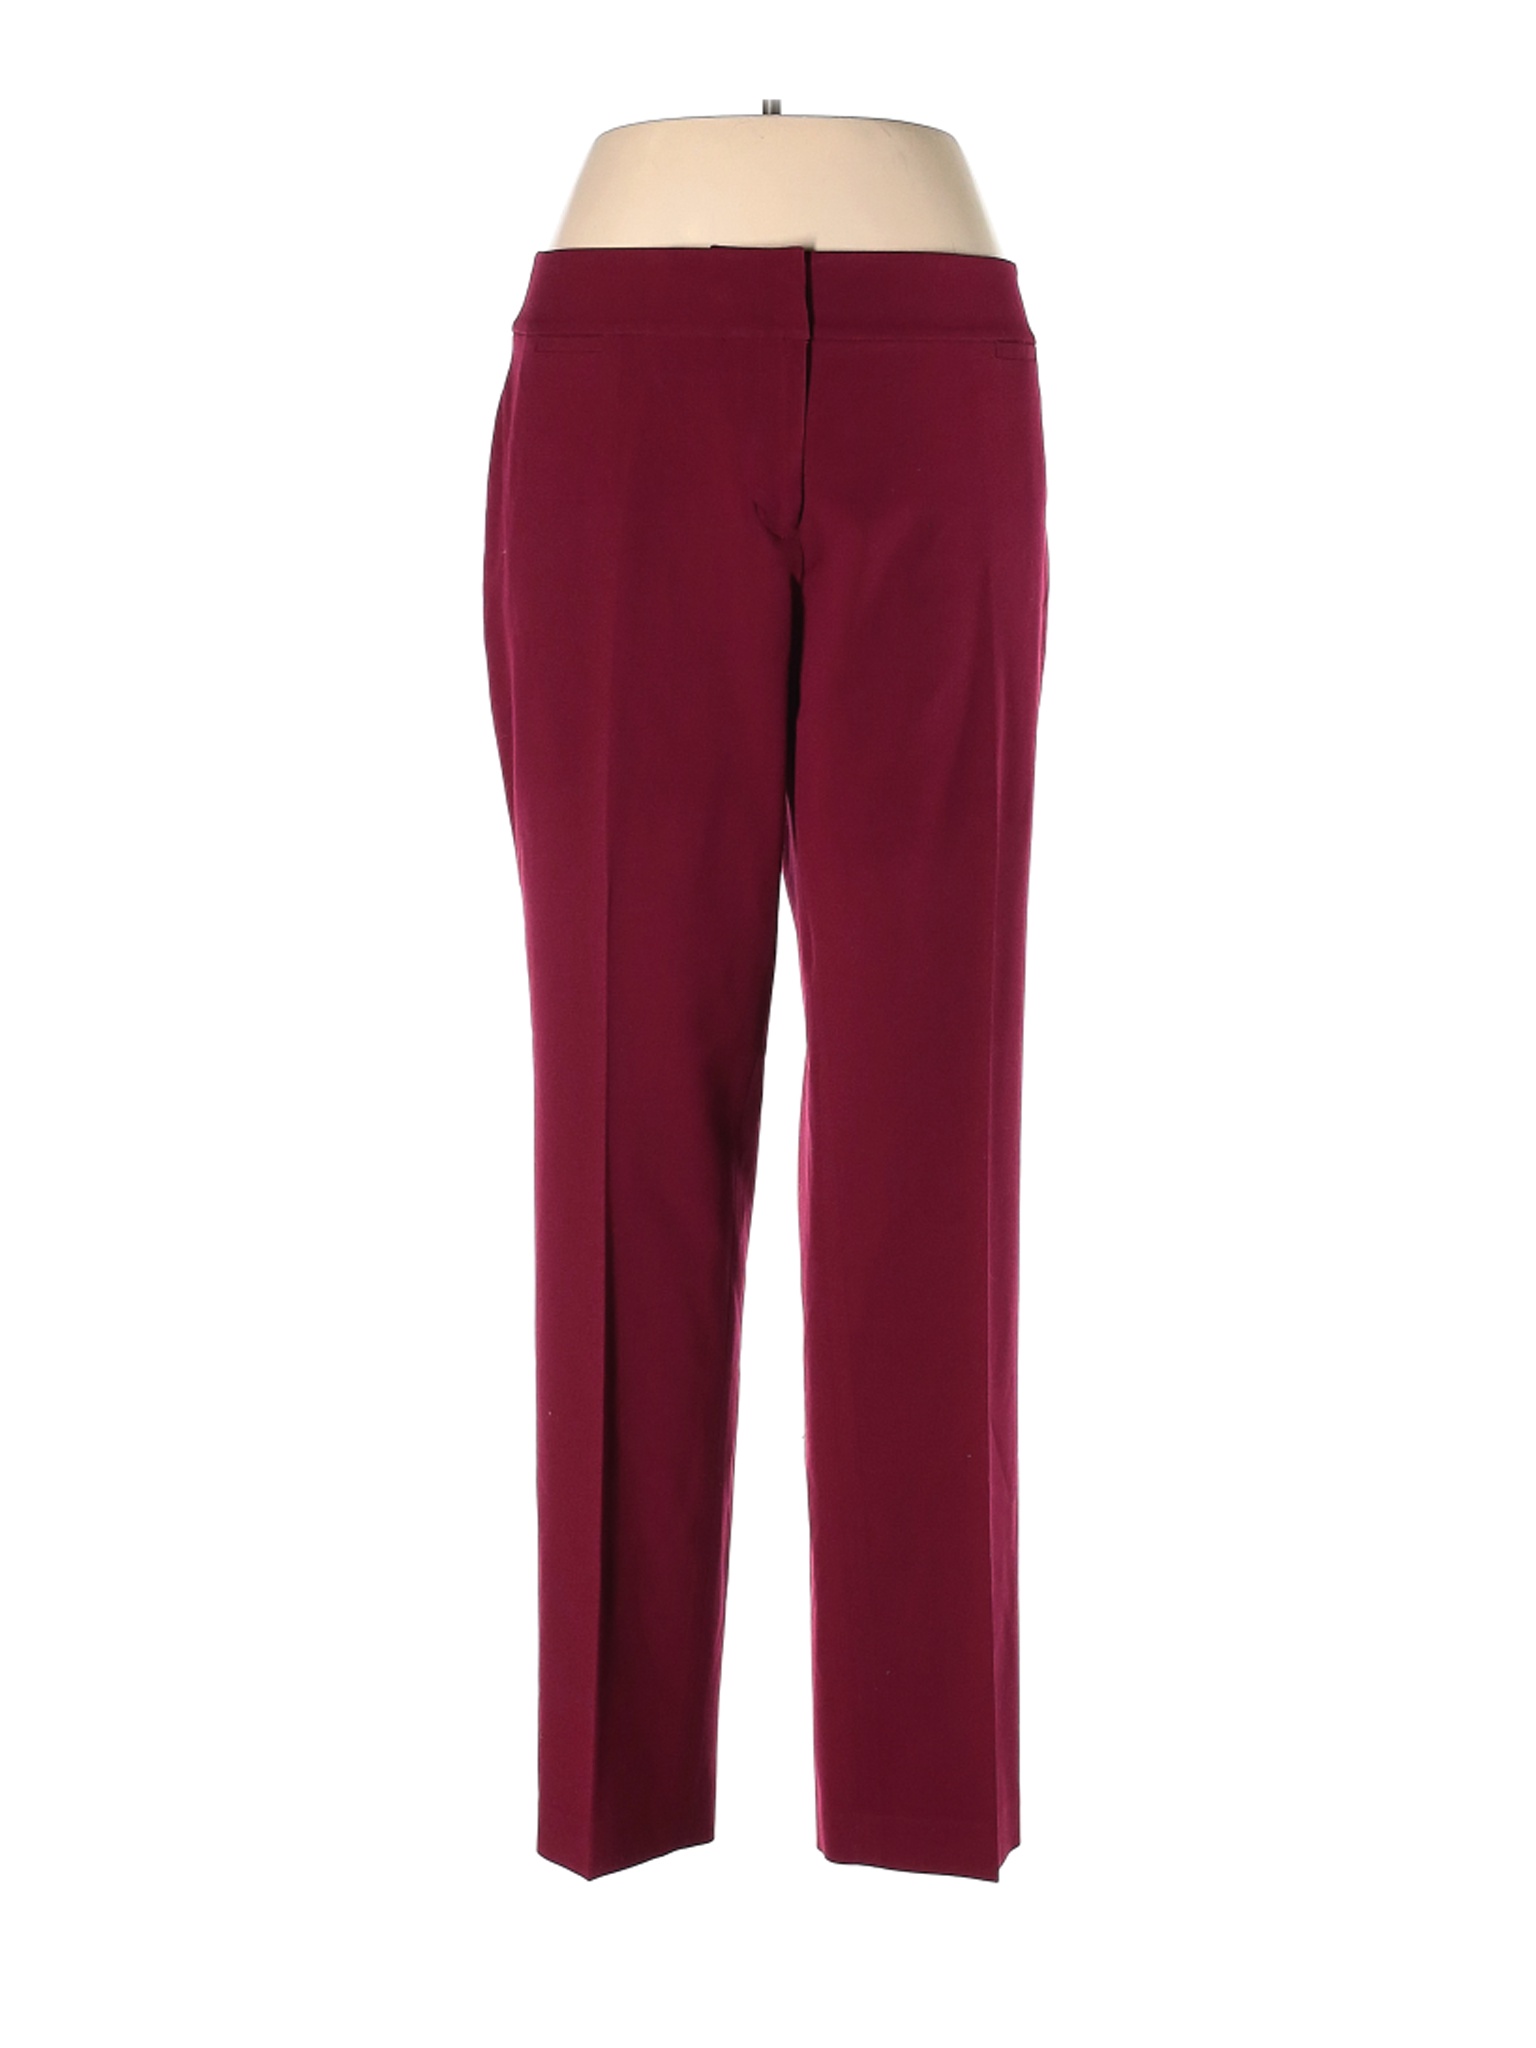 Nine West Women Red Dress Pants 14 | eBay